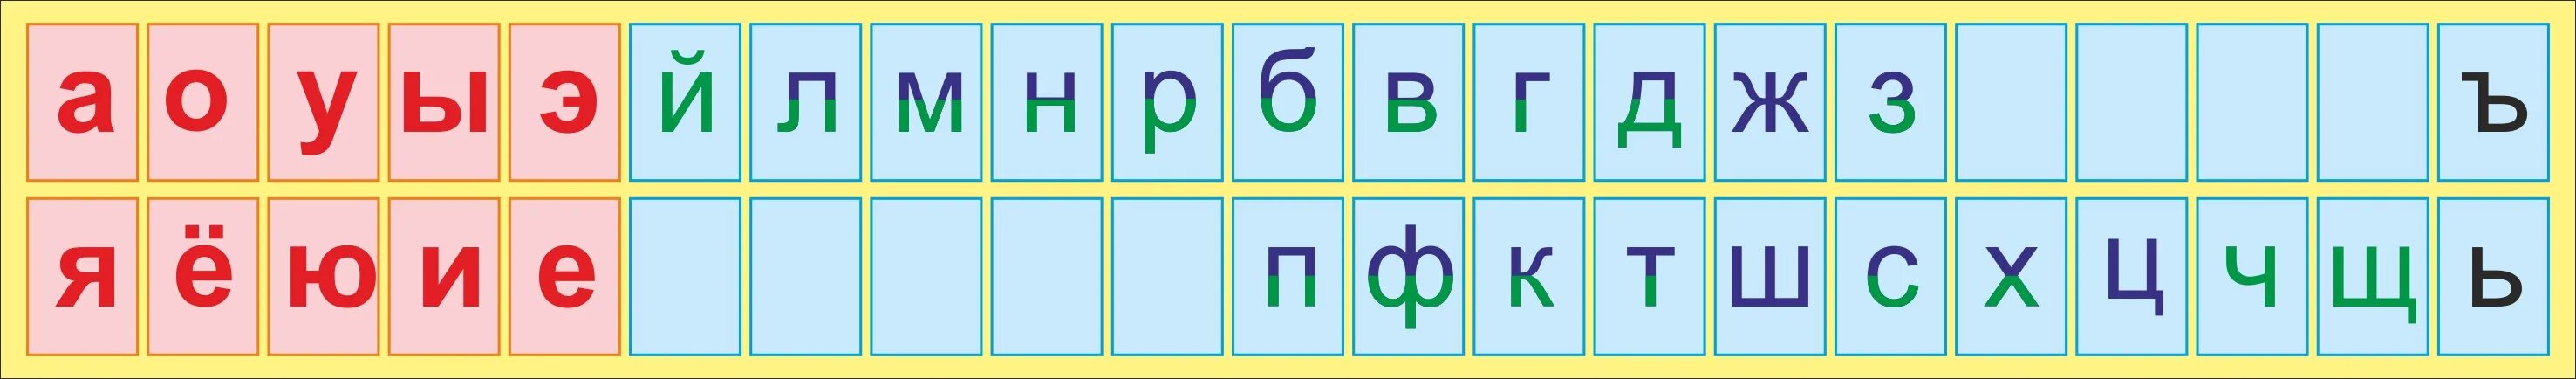 Алфавит гласные и согласные буквы. Лента букв. Русский алфавит с гласными и согласными буквами. Азбука гласных и согласных букв. Место е в алфавите